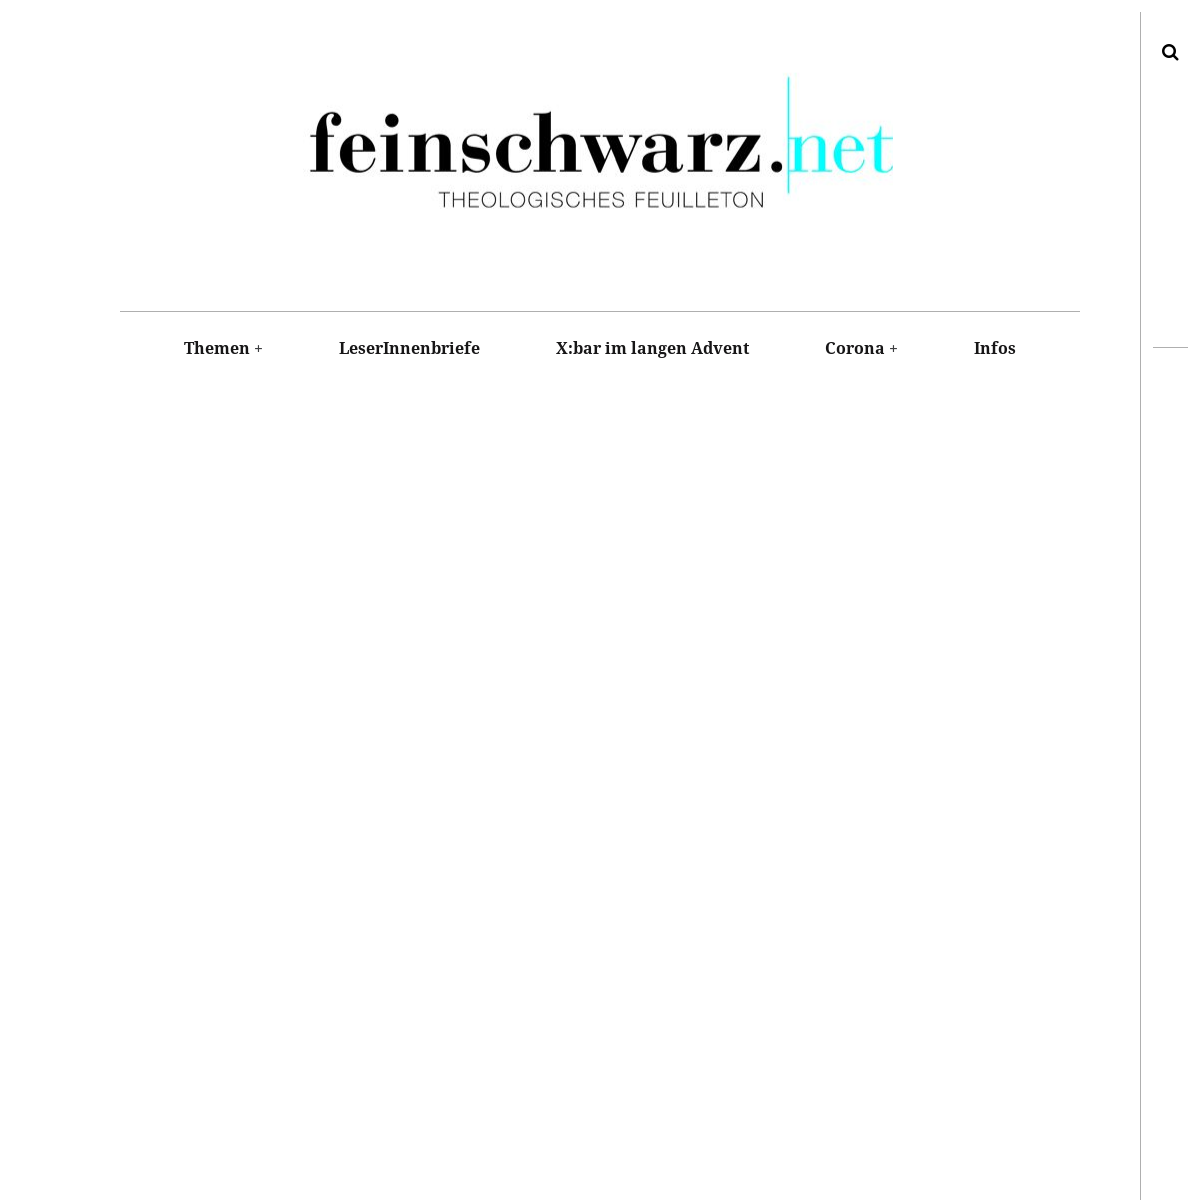 A complete backup of feinschwarz.net